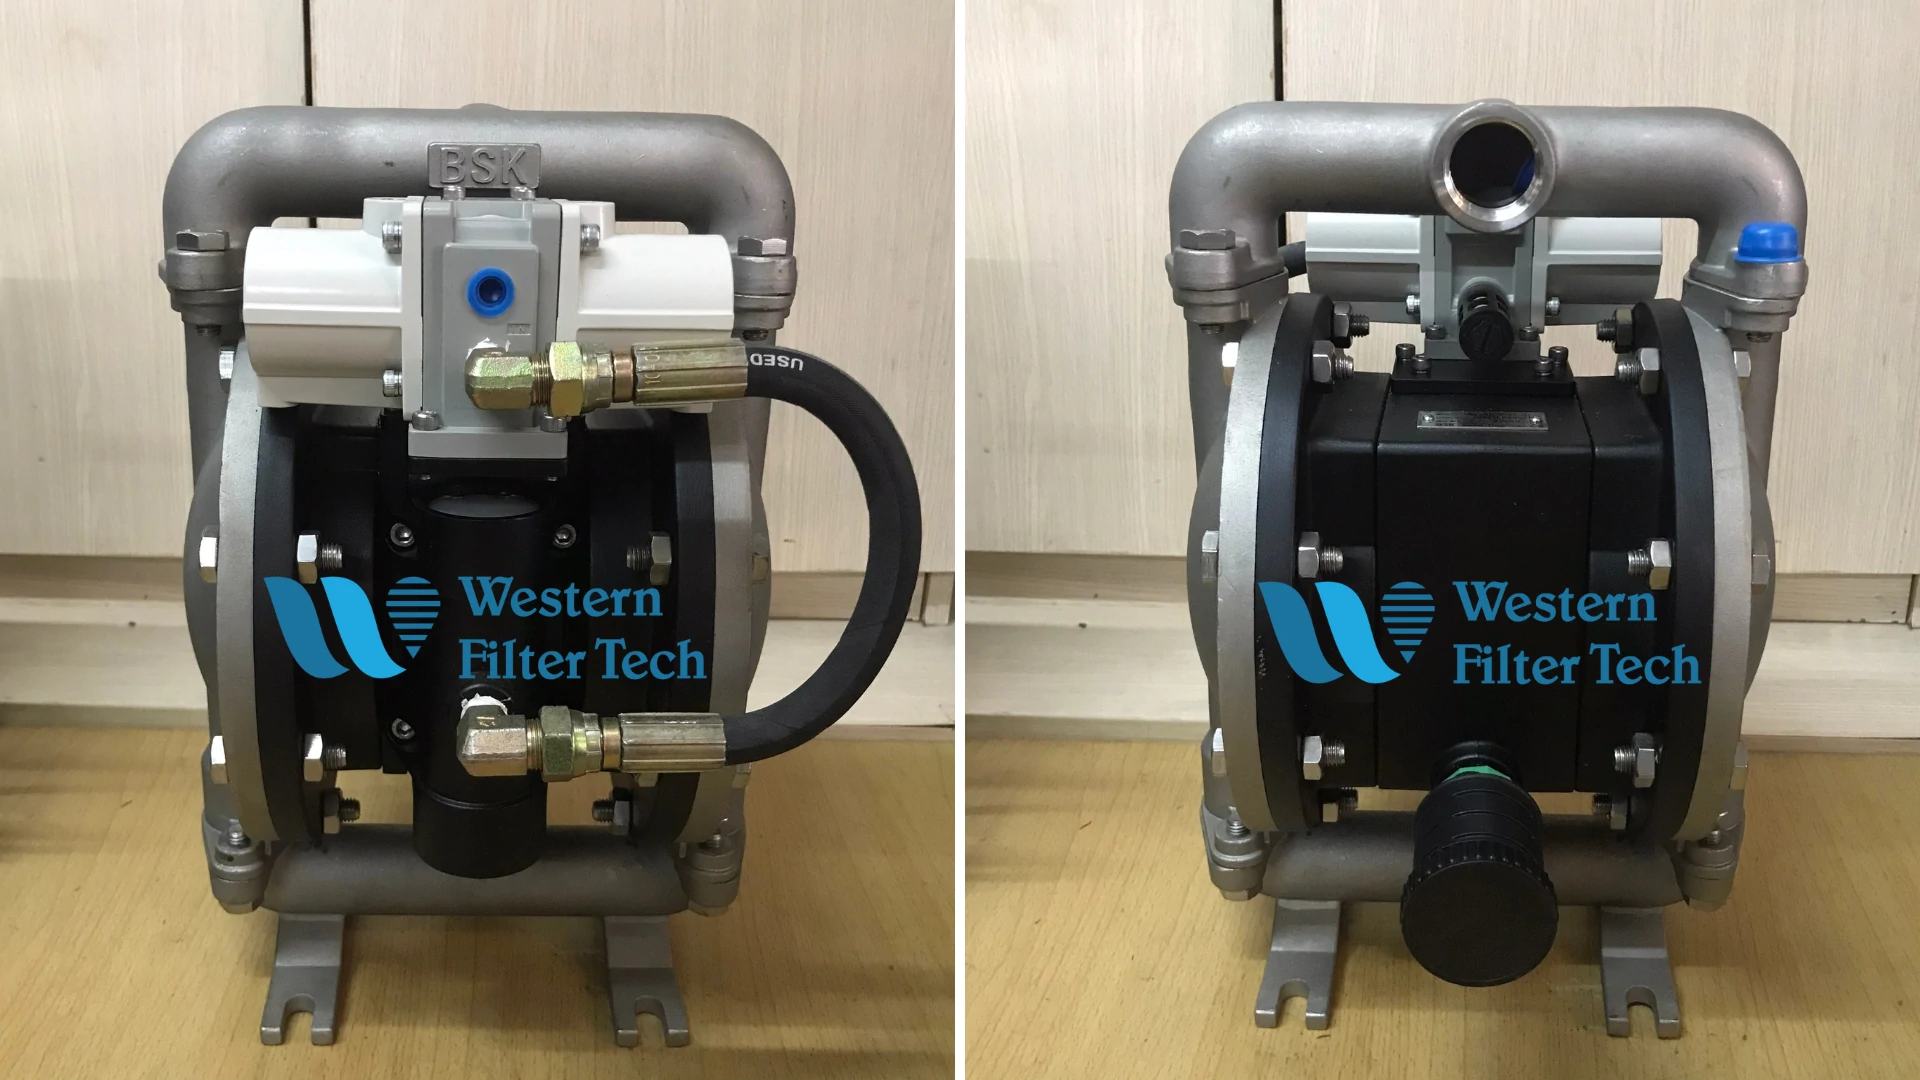 Stainless steel high pressure diaphragm pump BSK - Western Filter